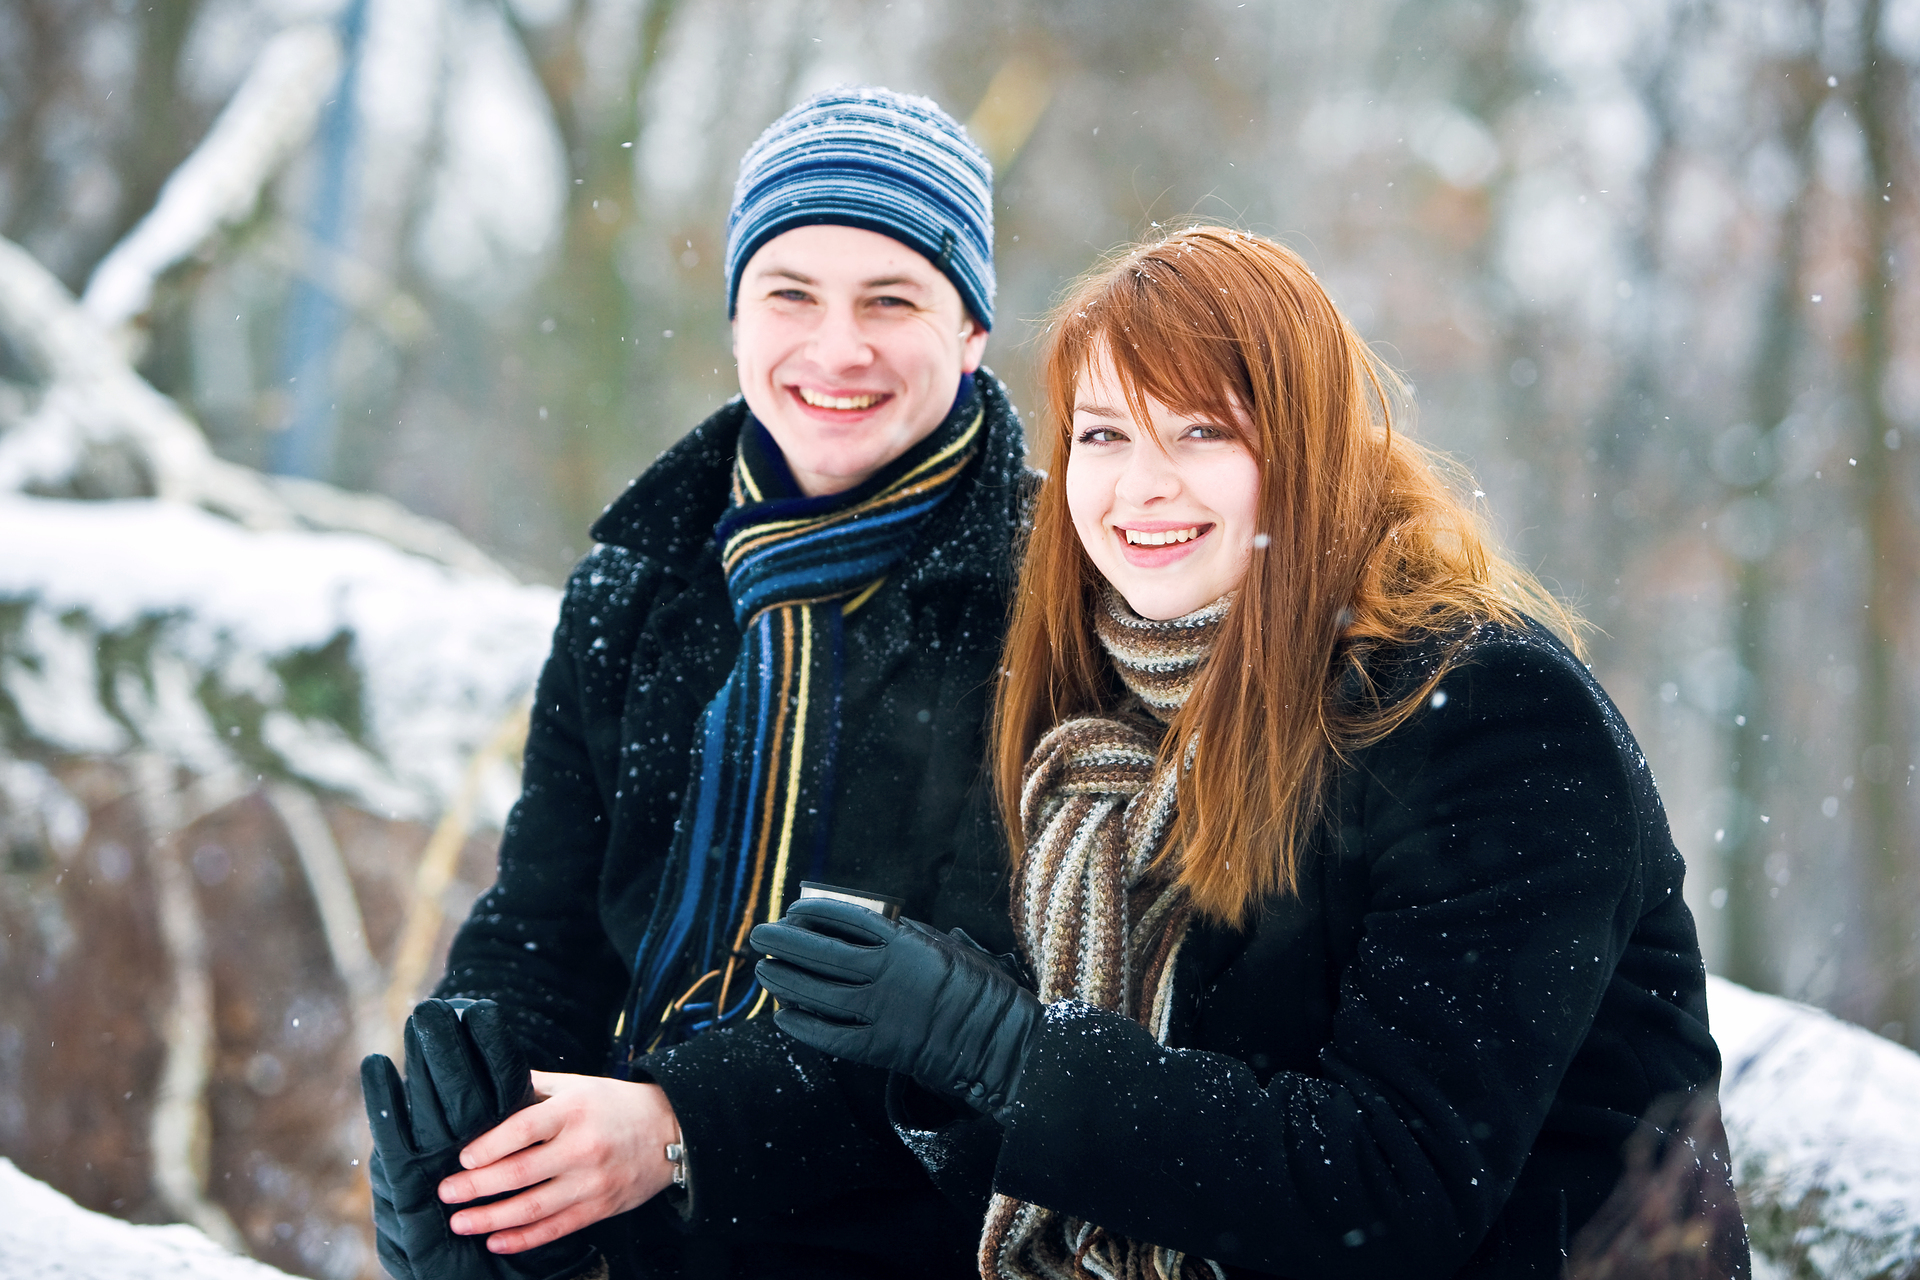 Na tym zdjęciu widzimy parę w wieku 14 lat, która spaceruje w zimowej scenerii. Chłopak trzyma dziewczynę za rękę, a ona ma na sobie ciepłą kurtkę z futrzanym kapturem. W tle widać śnieżne drzewa i biały krajobraz. Para uśmiecha się do siebie i wydaje się, że dobrze się bawią, chociaż jest zimno. Całość tworzy romantyczną i spokojną atmosferę, która idealnie wpisuje się w zimową aurę.